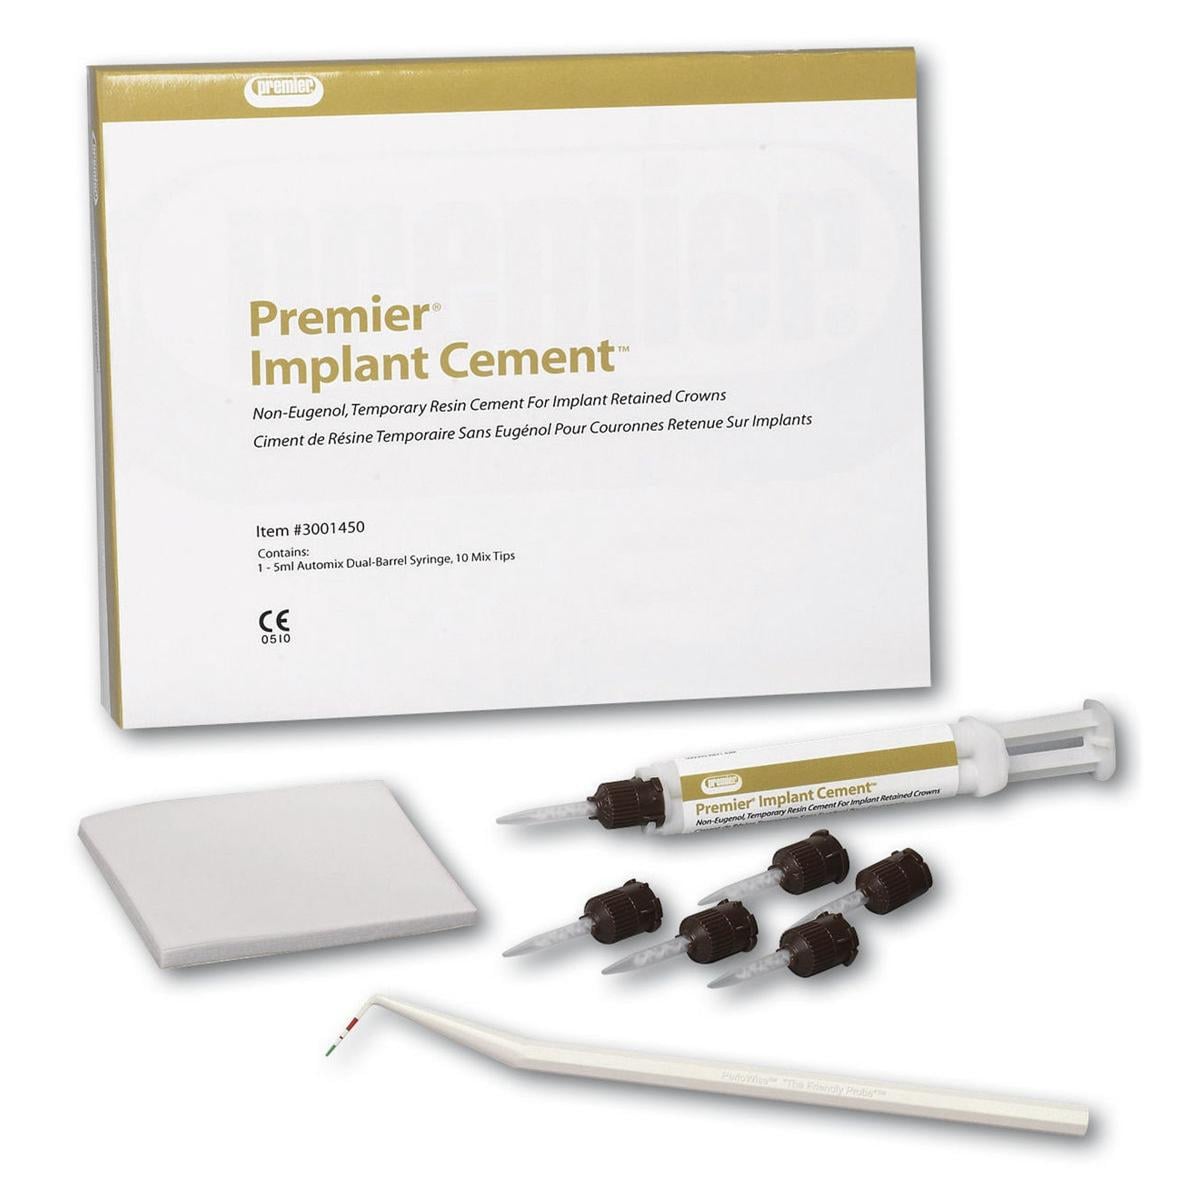 Implant cement - 1 automix-spuit van 5 ml, 10 mengtips en 1 mengblok